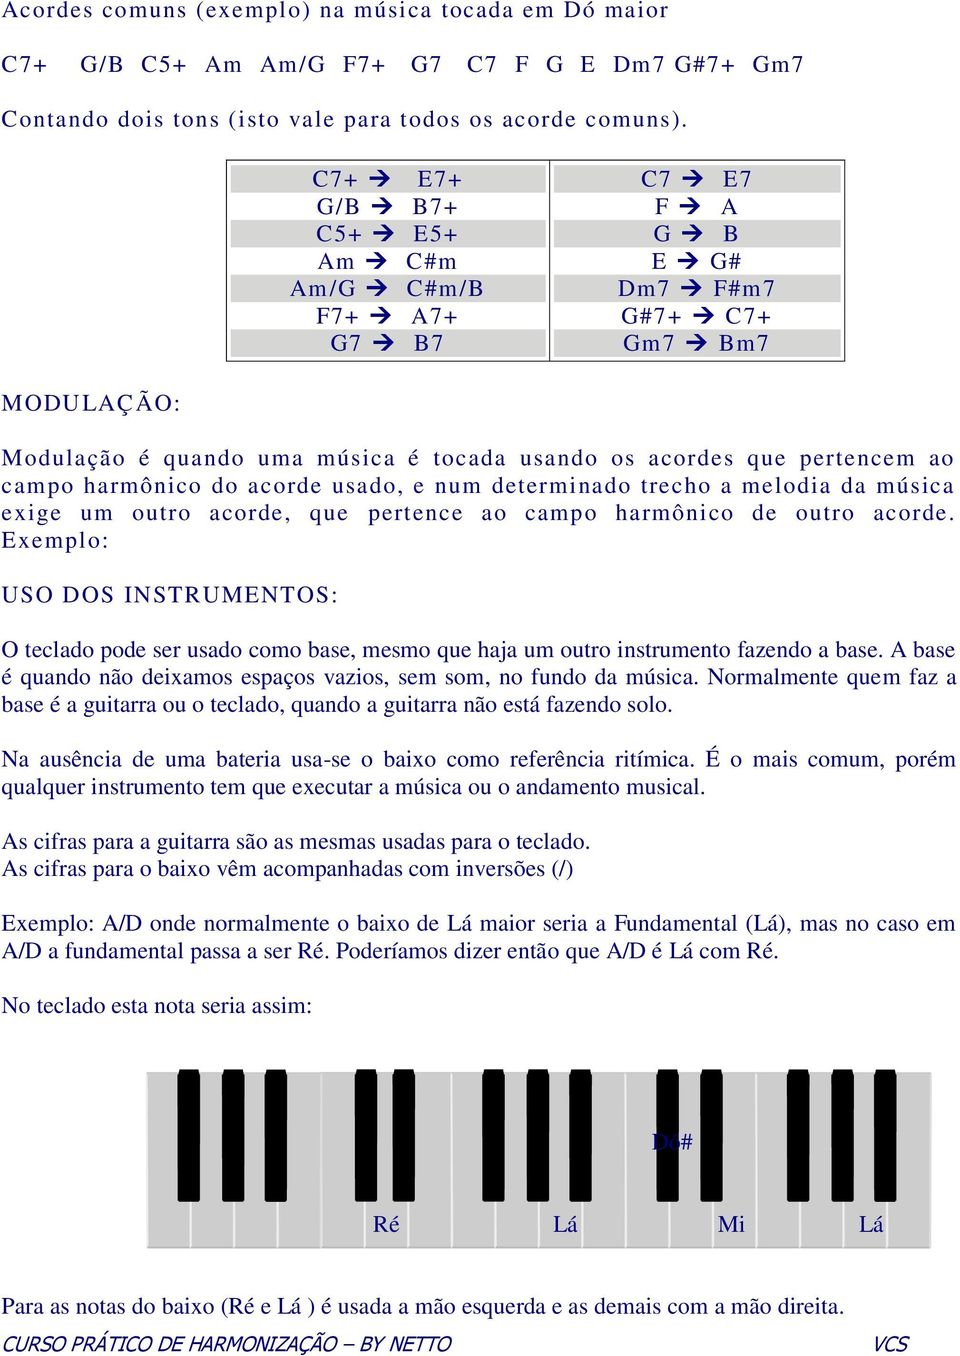 harmônico do acorde usado, e num determinado trecho a melodia da música exige um outro acorde, que pertence ao campo harmônico de outro acorde.